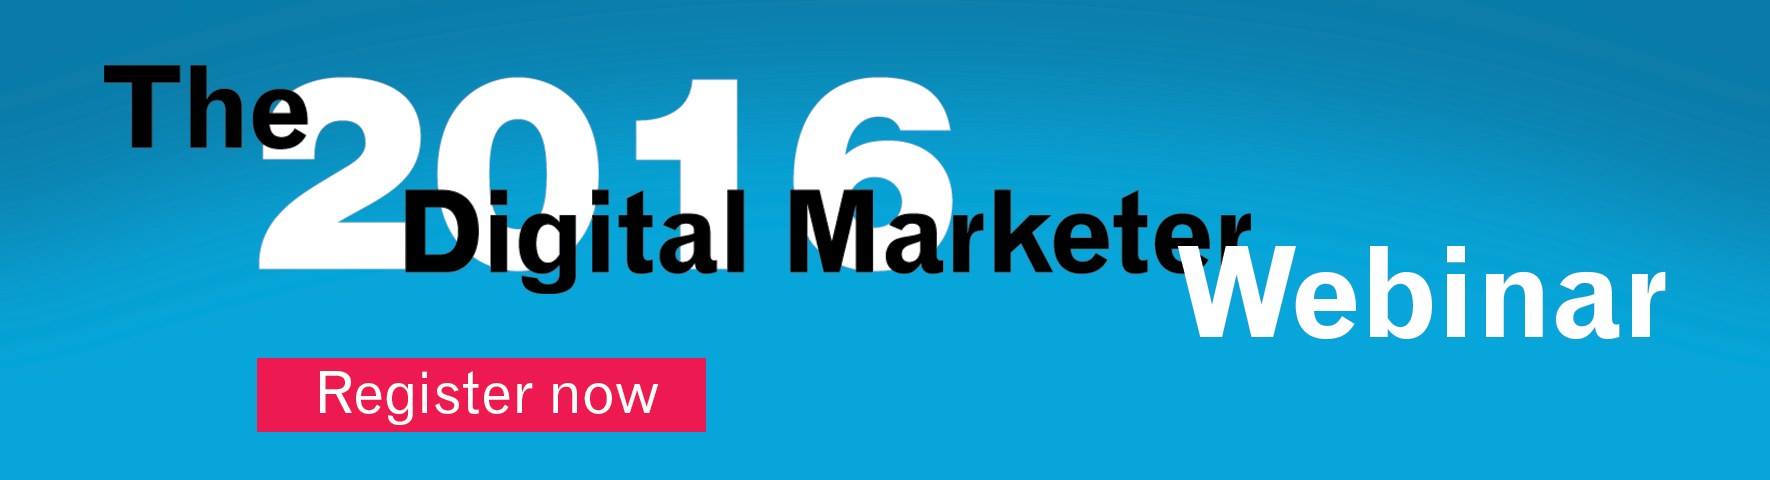 Register for the Digital Marketer webinar